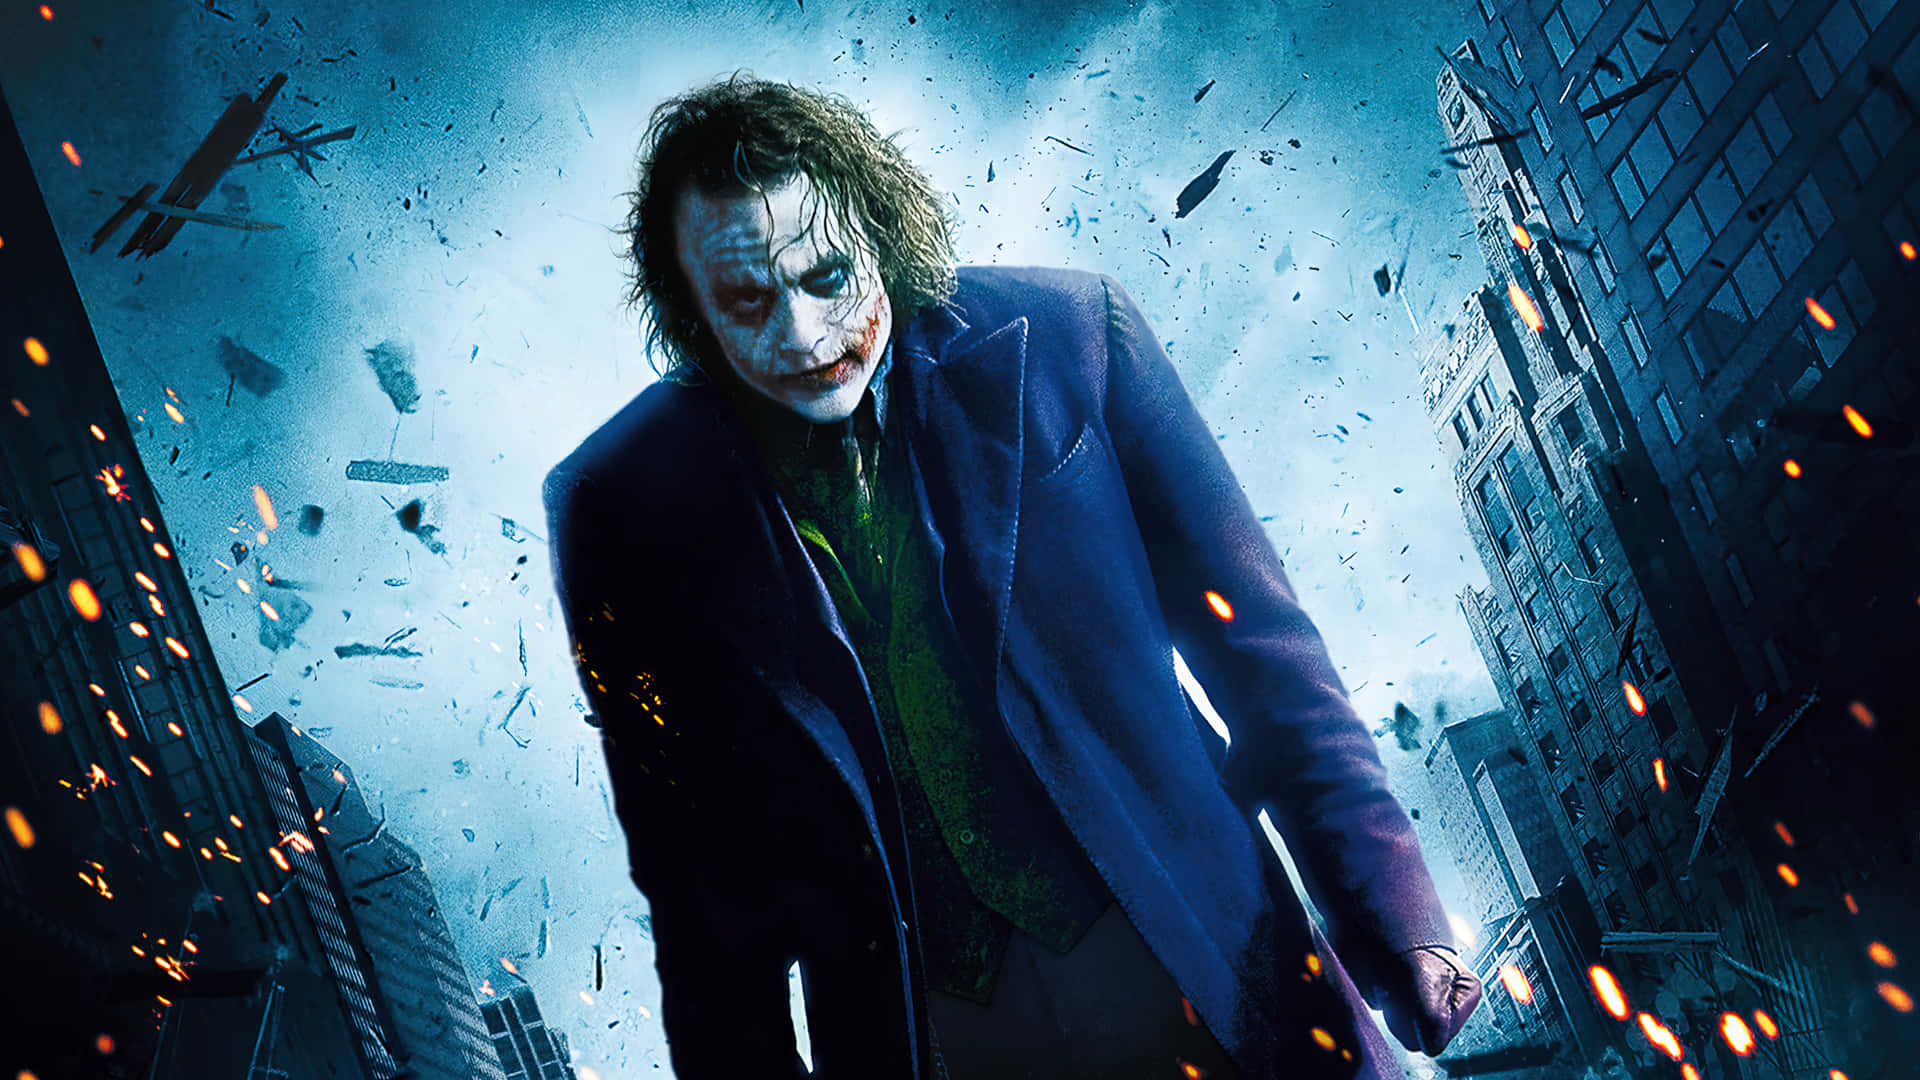 Darkknight Joker In 4k Ultra Hd Filmplakat Wallpaper